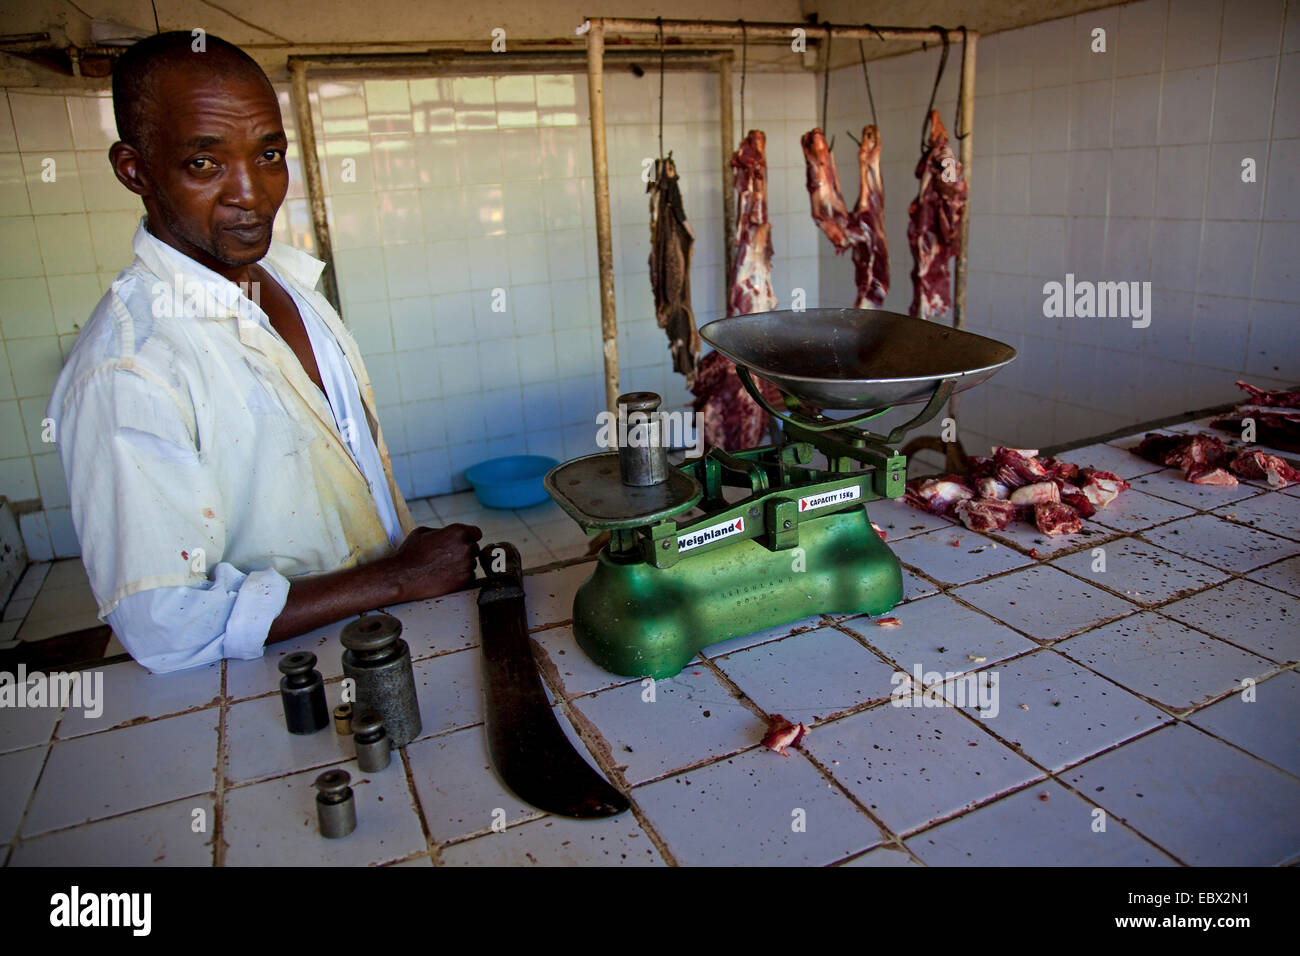 Butcher debout à côté échelle, Rwanda, Kigali, Nyamirambo Banque D'Images